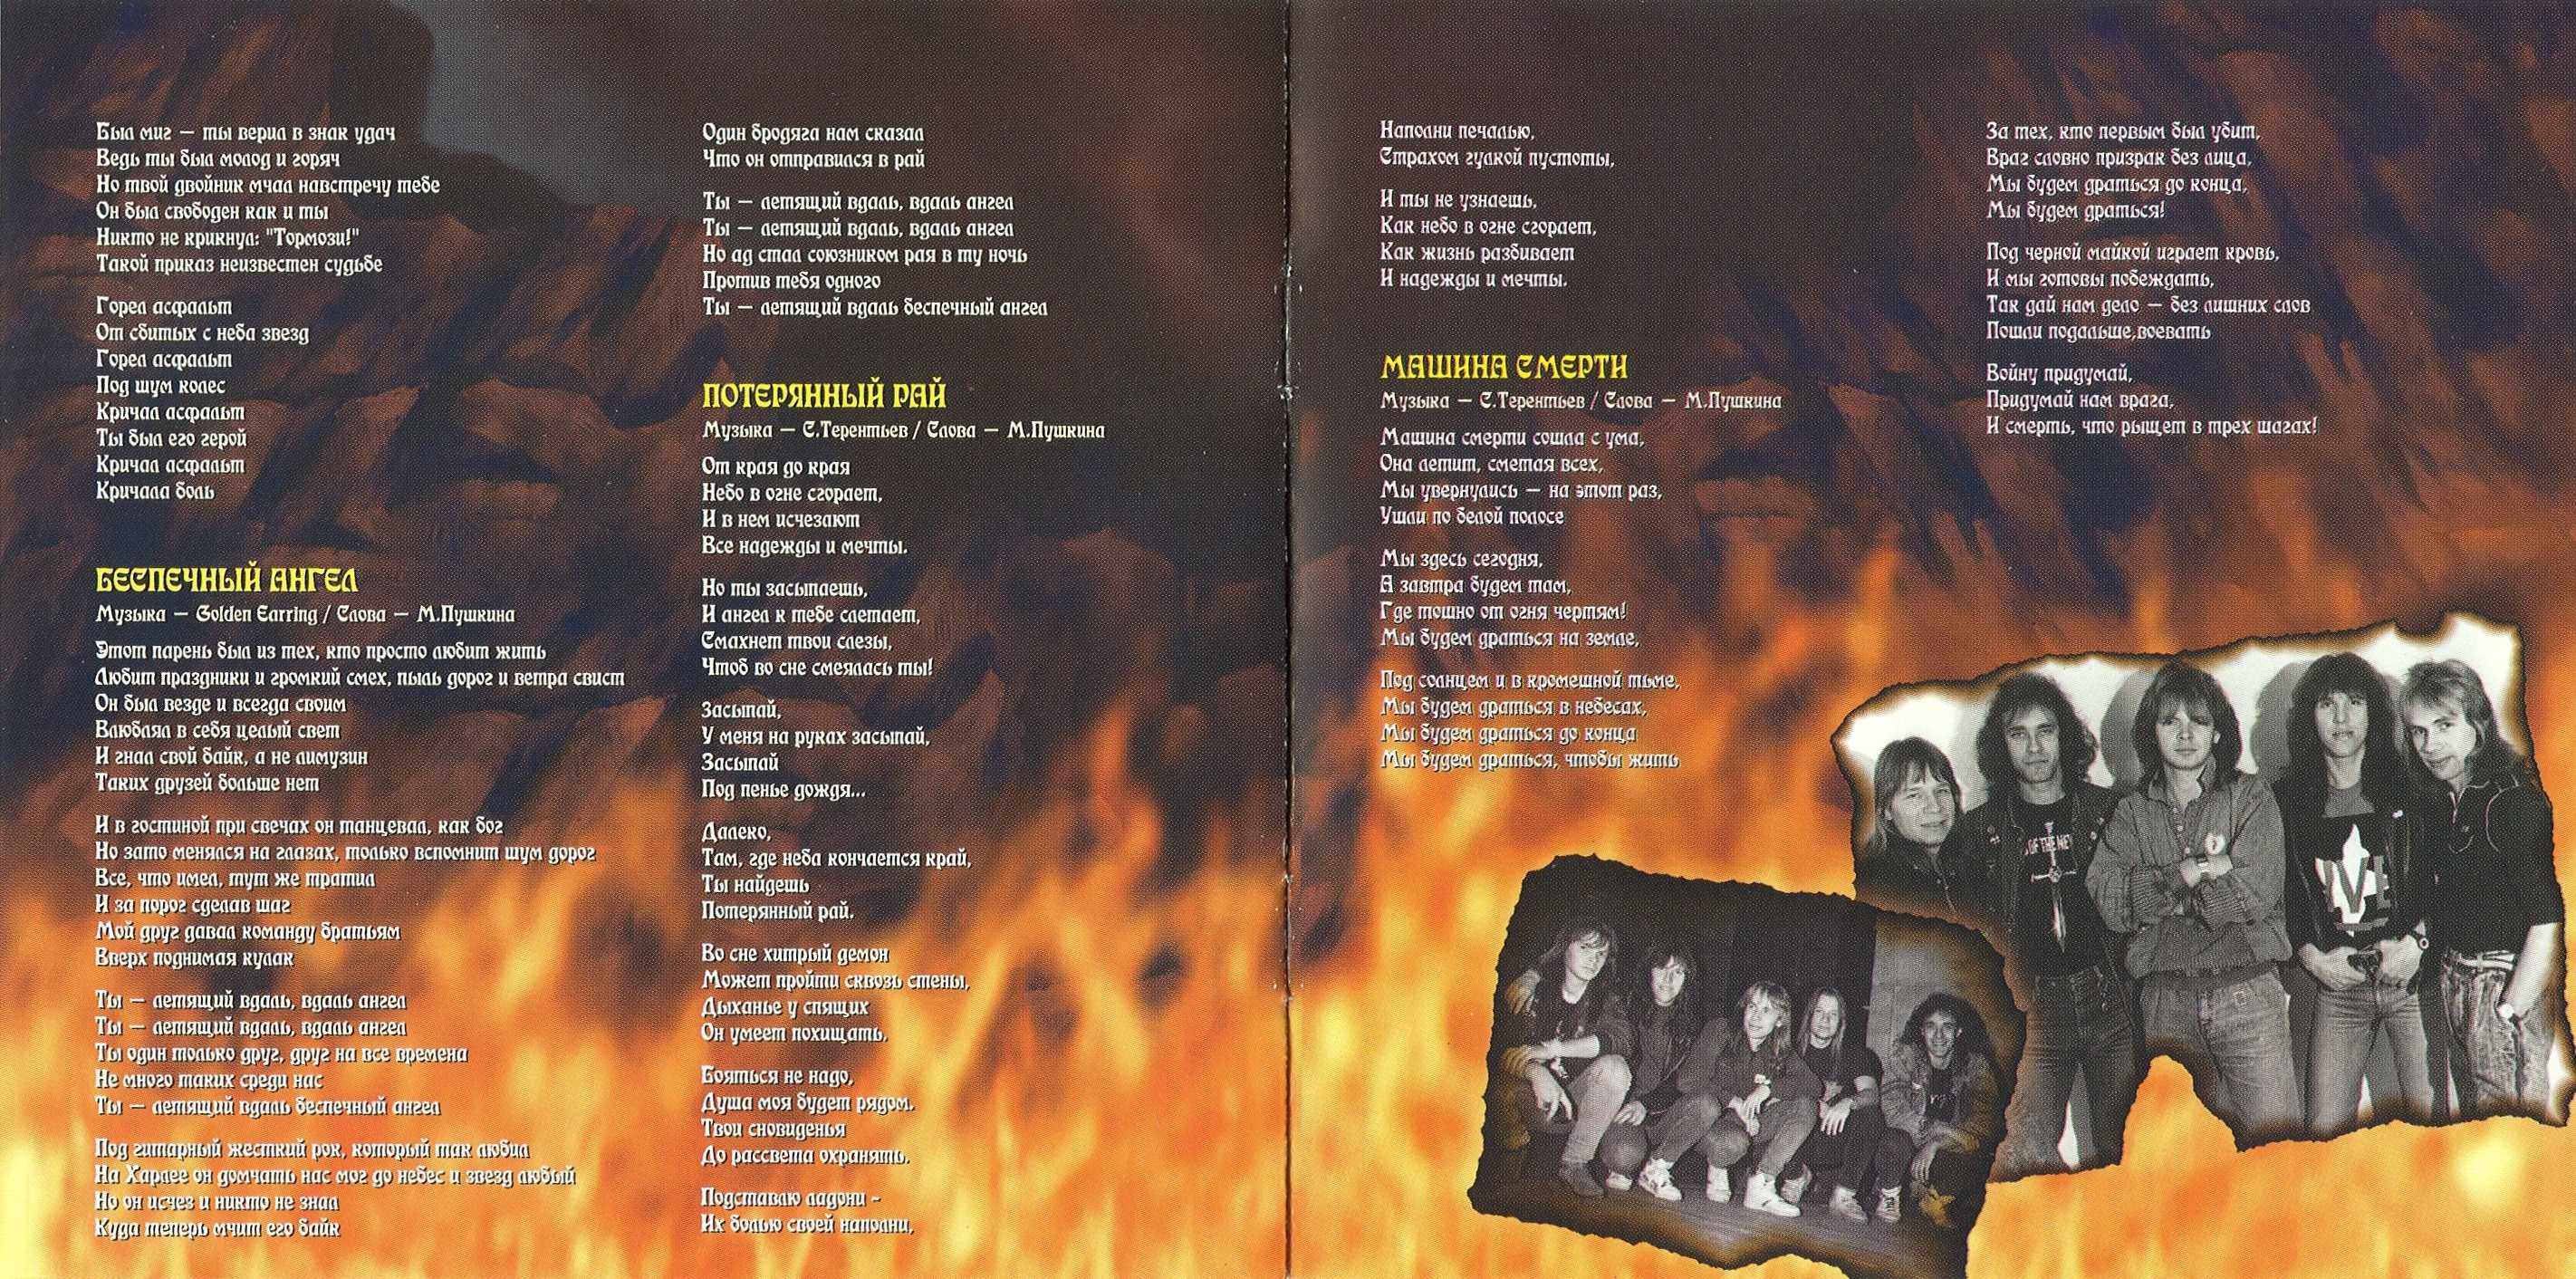 Ария текст огню. Ария 2002. Ария штиль диск. Ария штиль обложка. Группа Ария 1999.